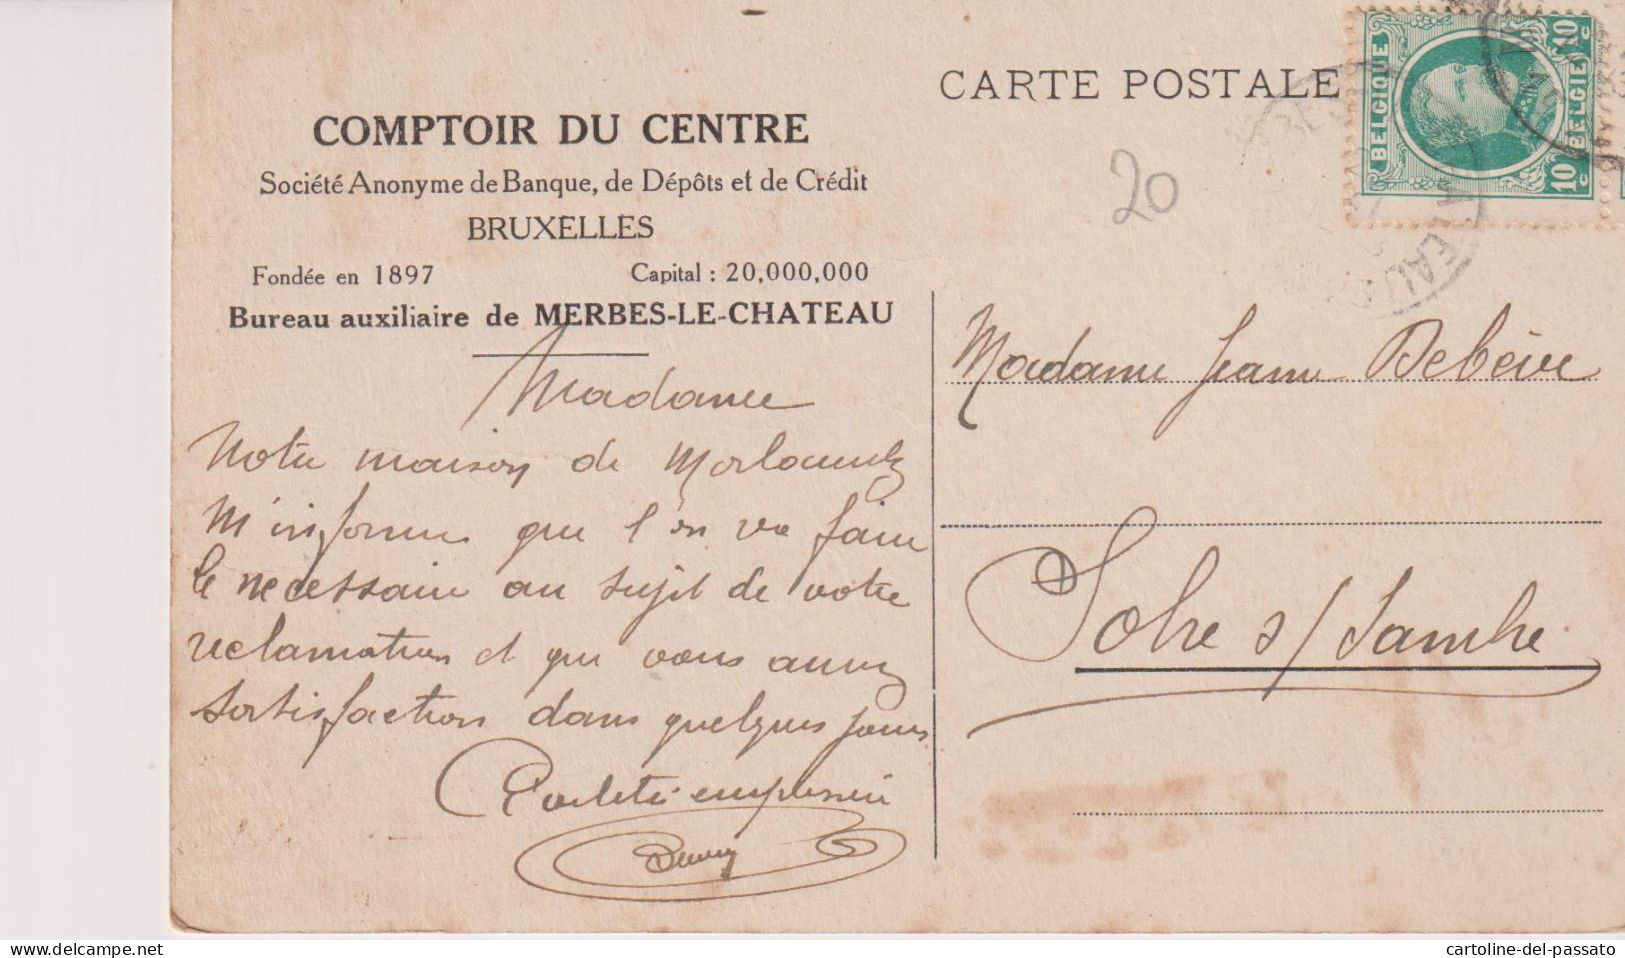 MERBES-LE-CHATEAU : COMPTOIR DU CENTRE BUREAU AUXILIAIRE (S.A.DE BANQUE DE DEPOTS ET DE CREDIT BXL) - Merbes-le-Château